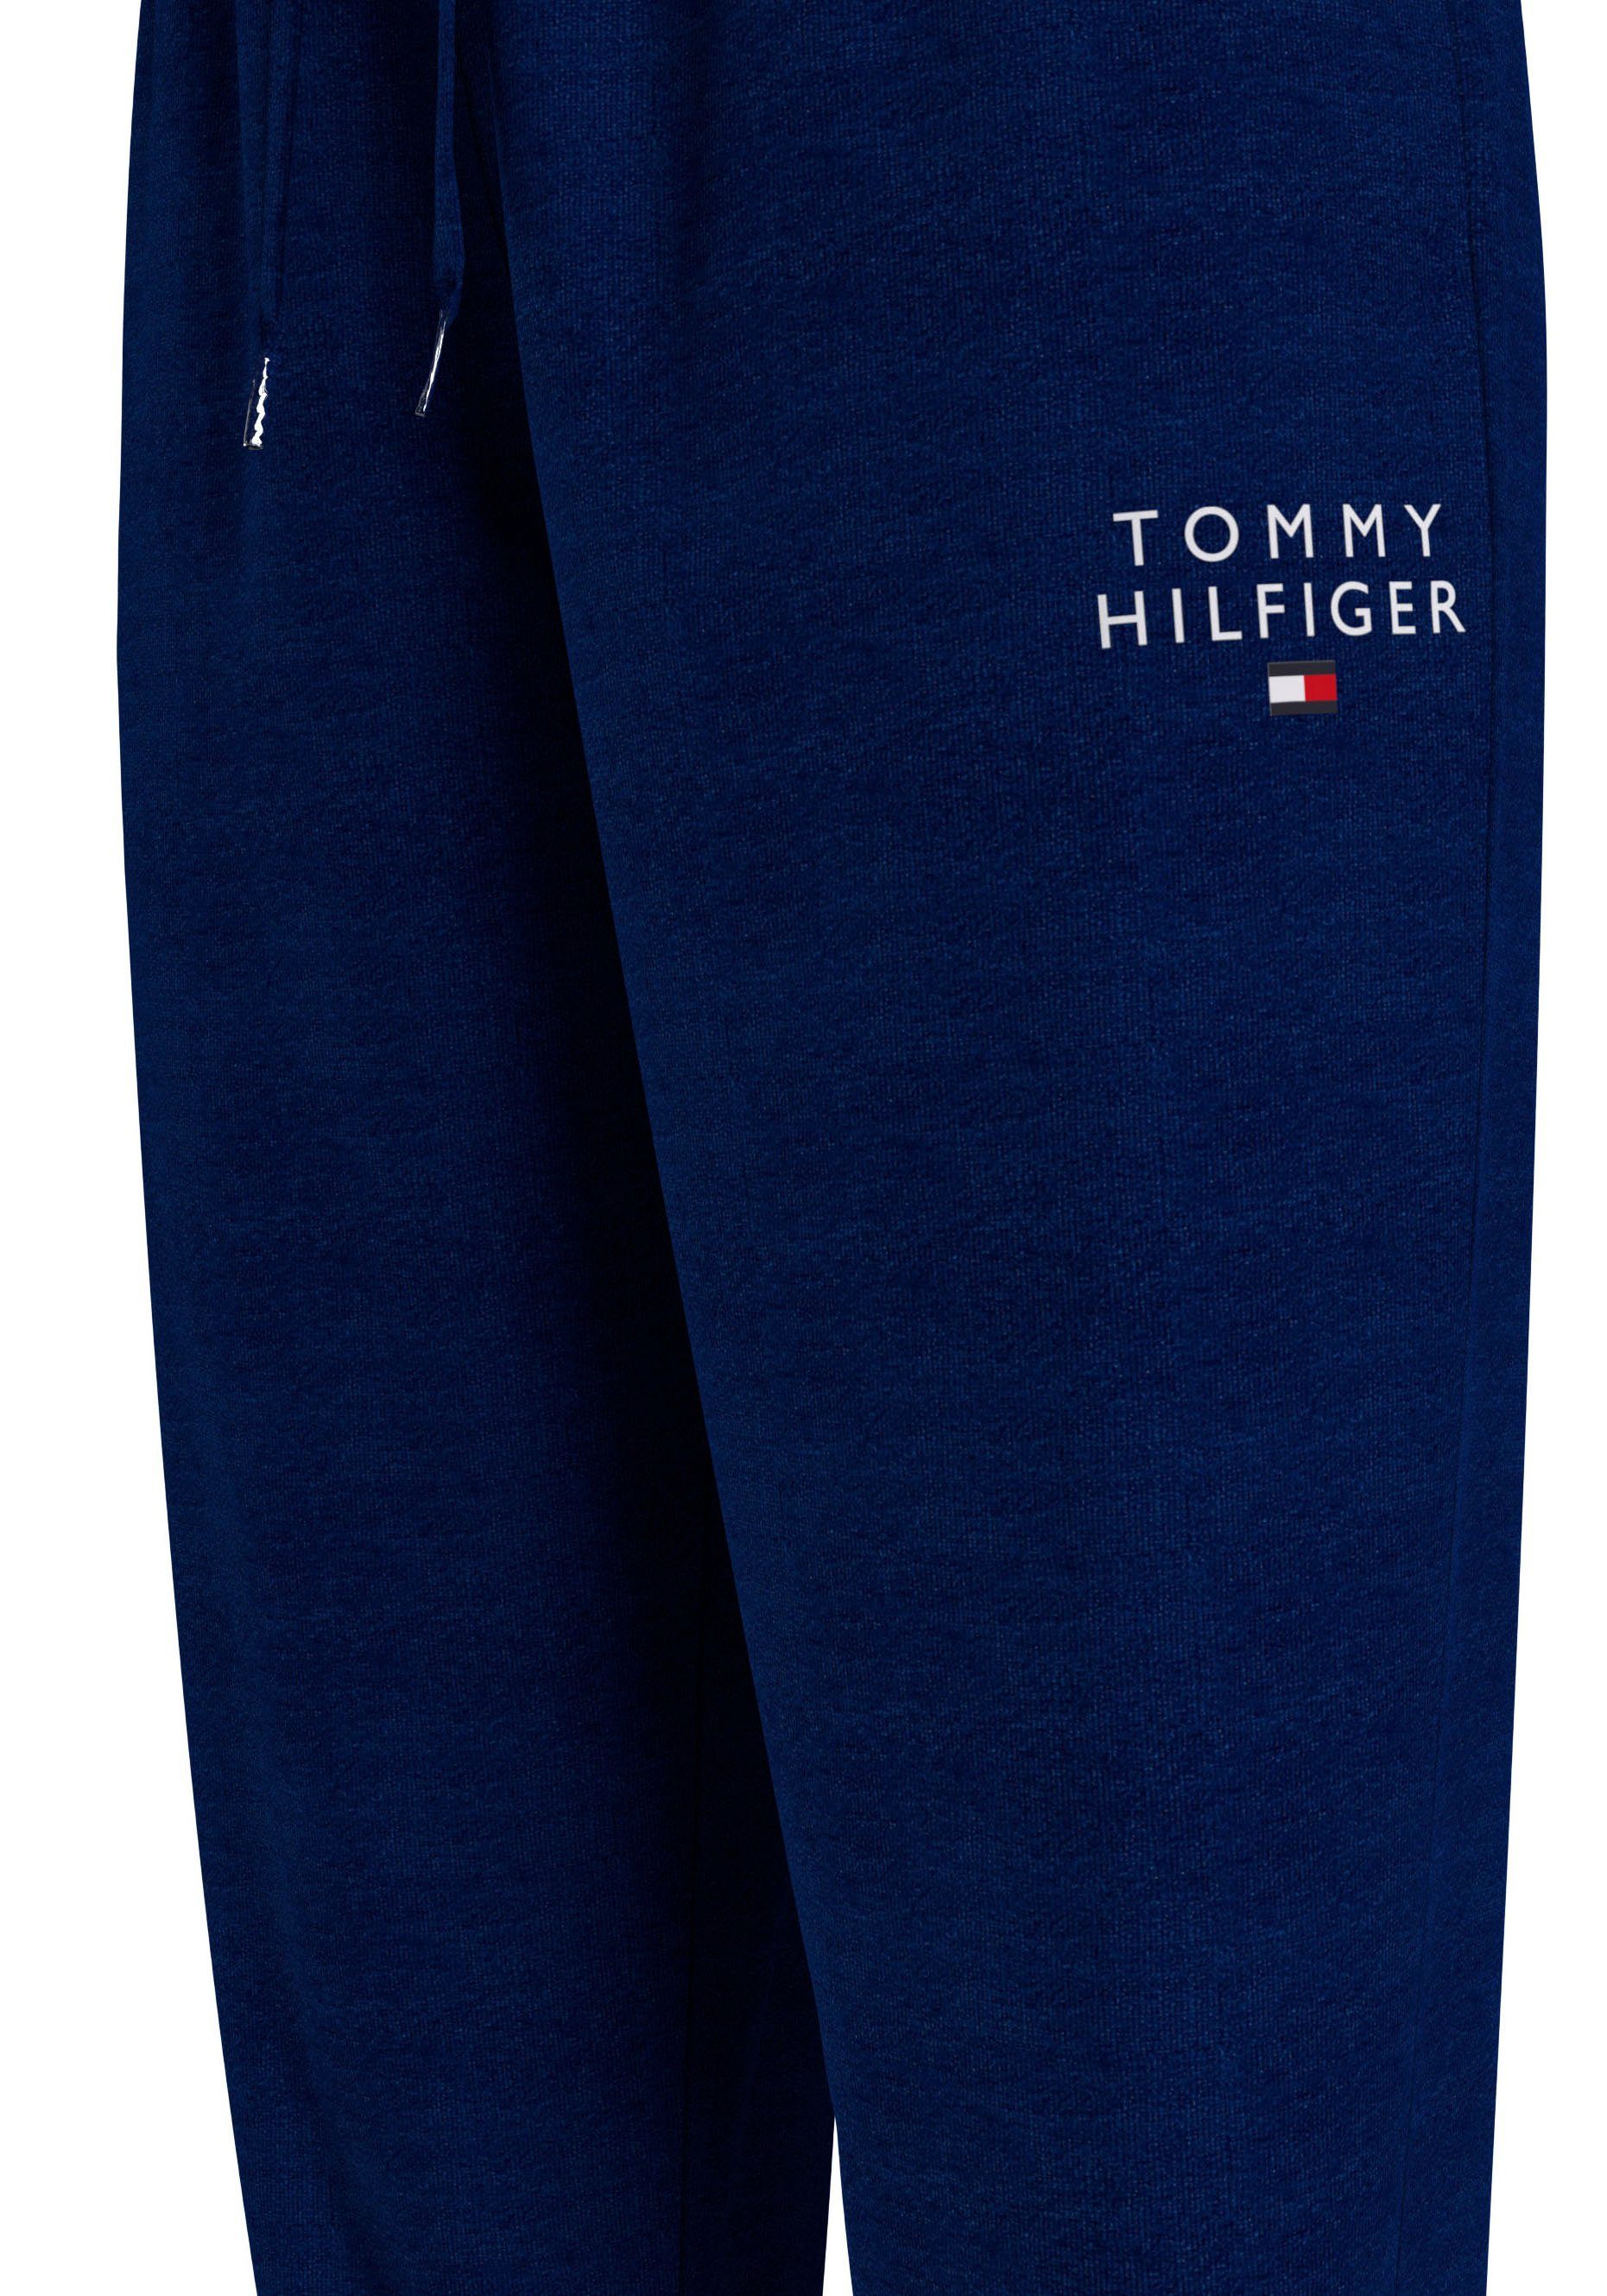 TRACK Tommy Sweathose PANTS Underwear Hilfiger Tommy Markenlogo-Aufdruck Hilfiger mit